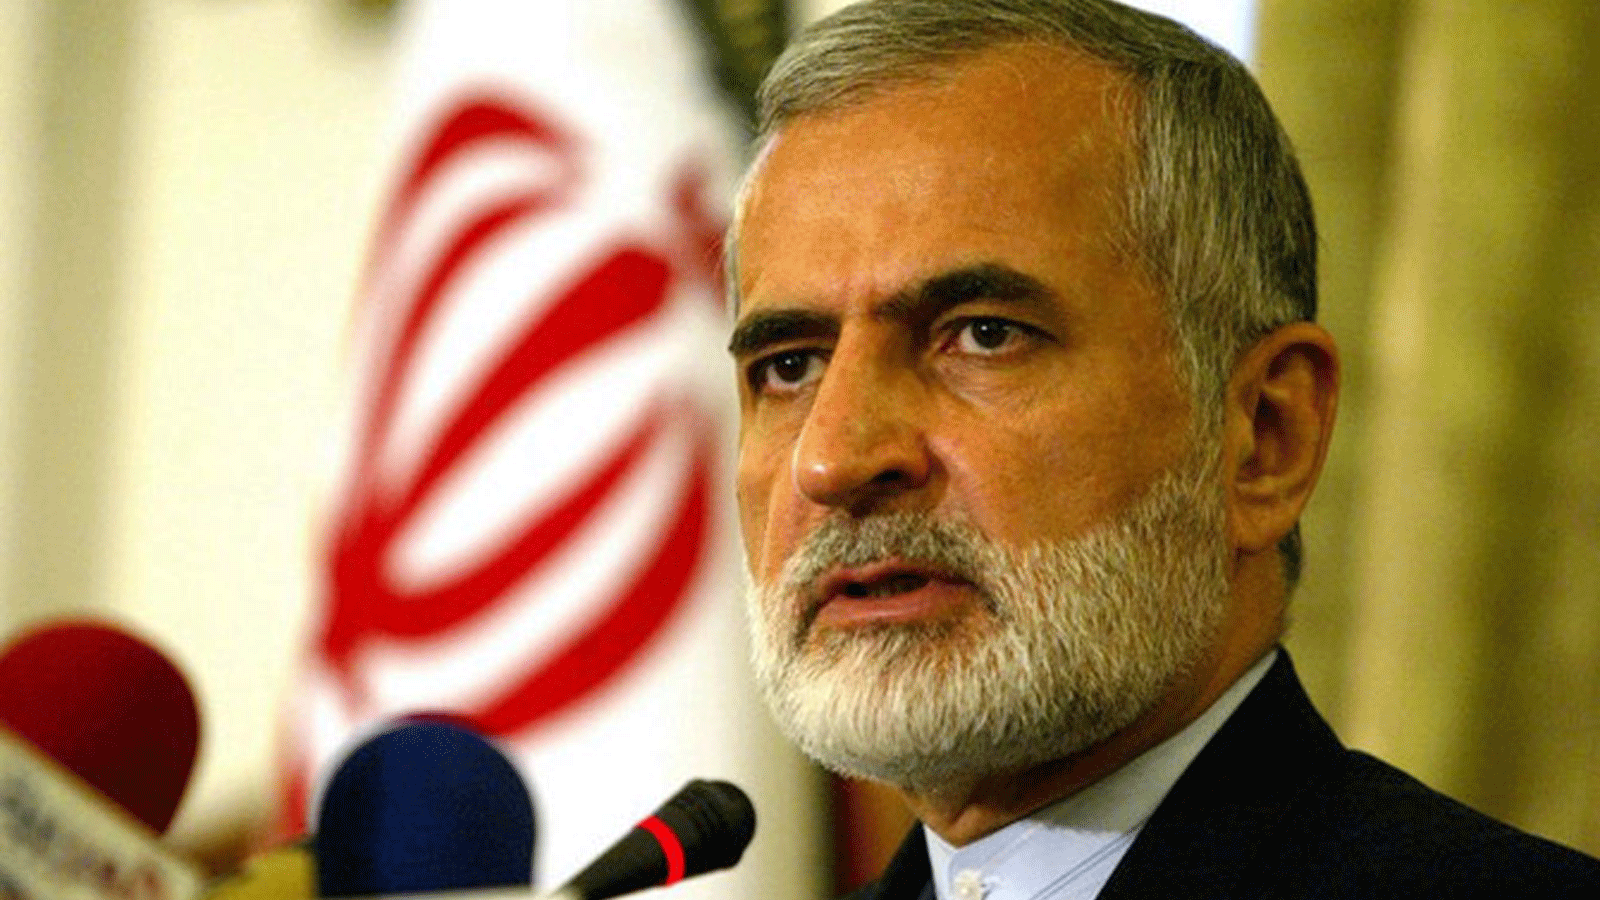 صورة أرشيفية لوزير الخارجية الإيراني كمال خرازي يتحدث إلى الصحافة خلال مؤتمر صحفي في طهران، 19 جزيران\يونيو 2005.